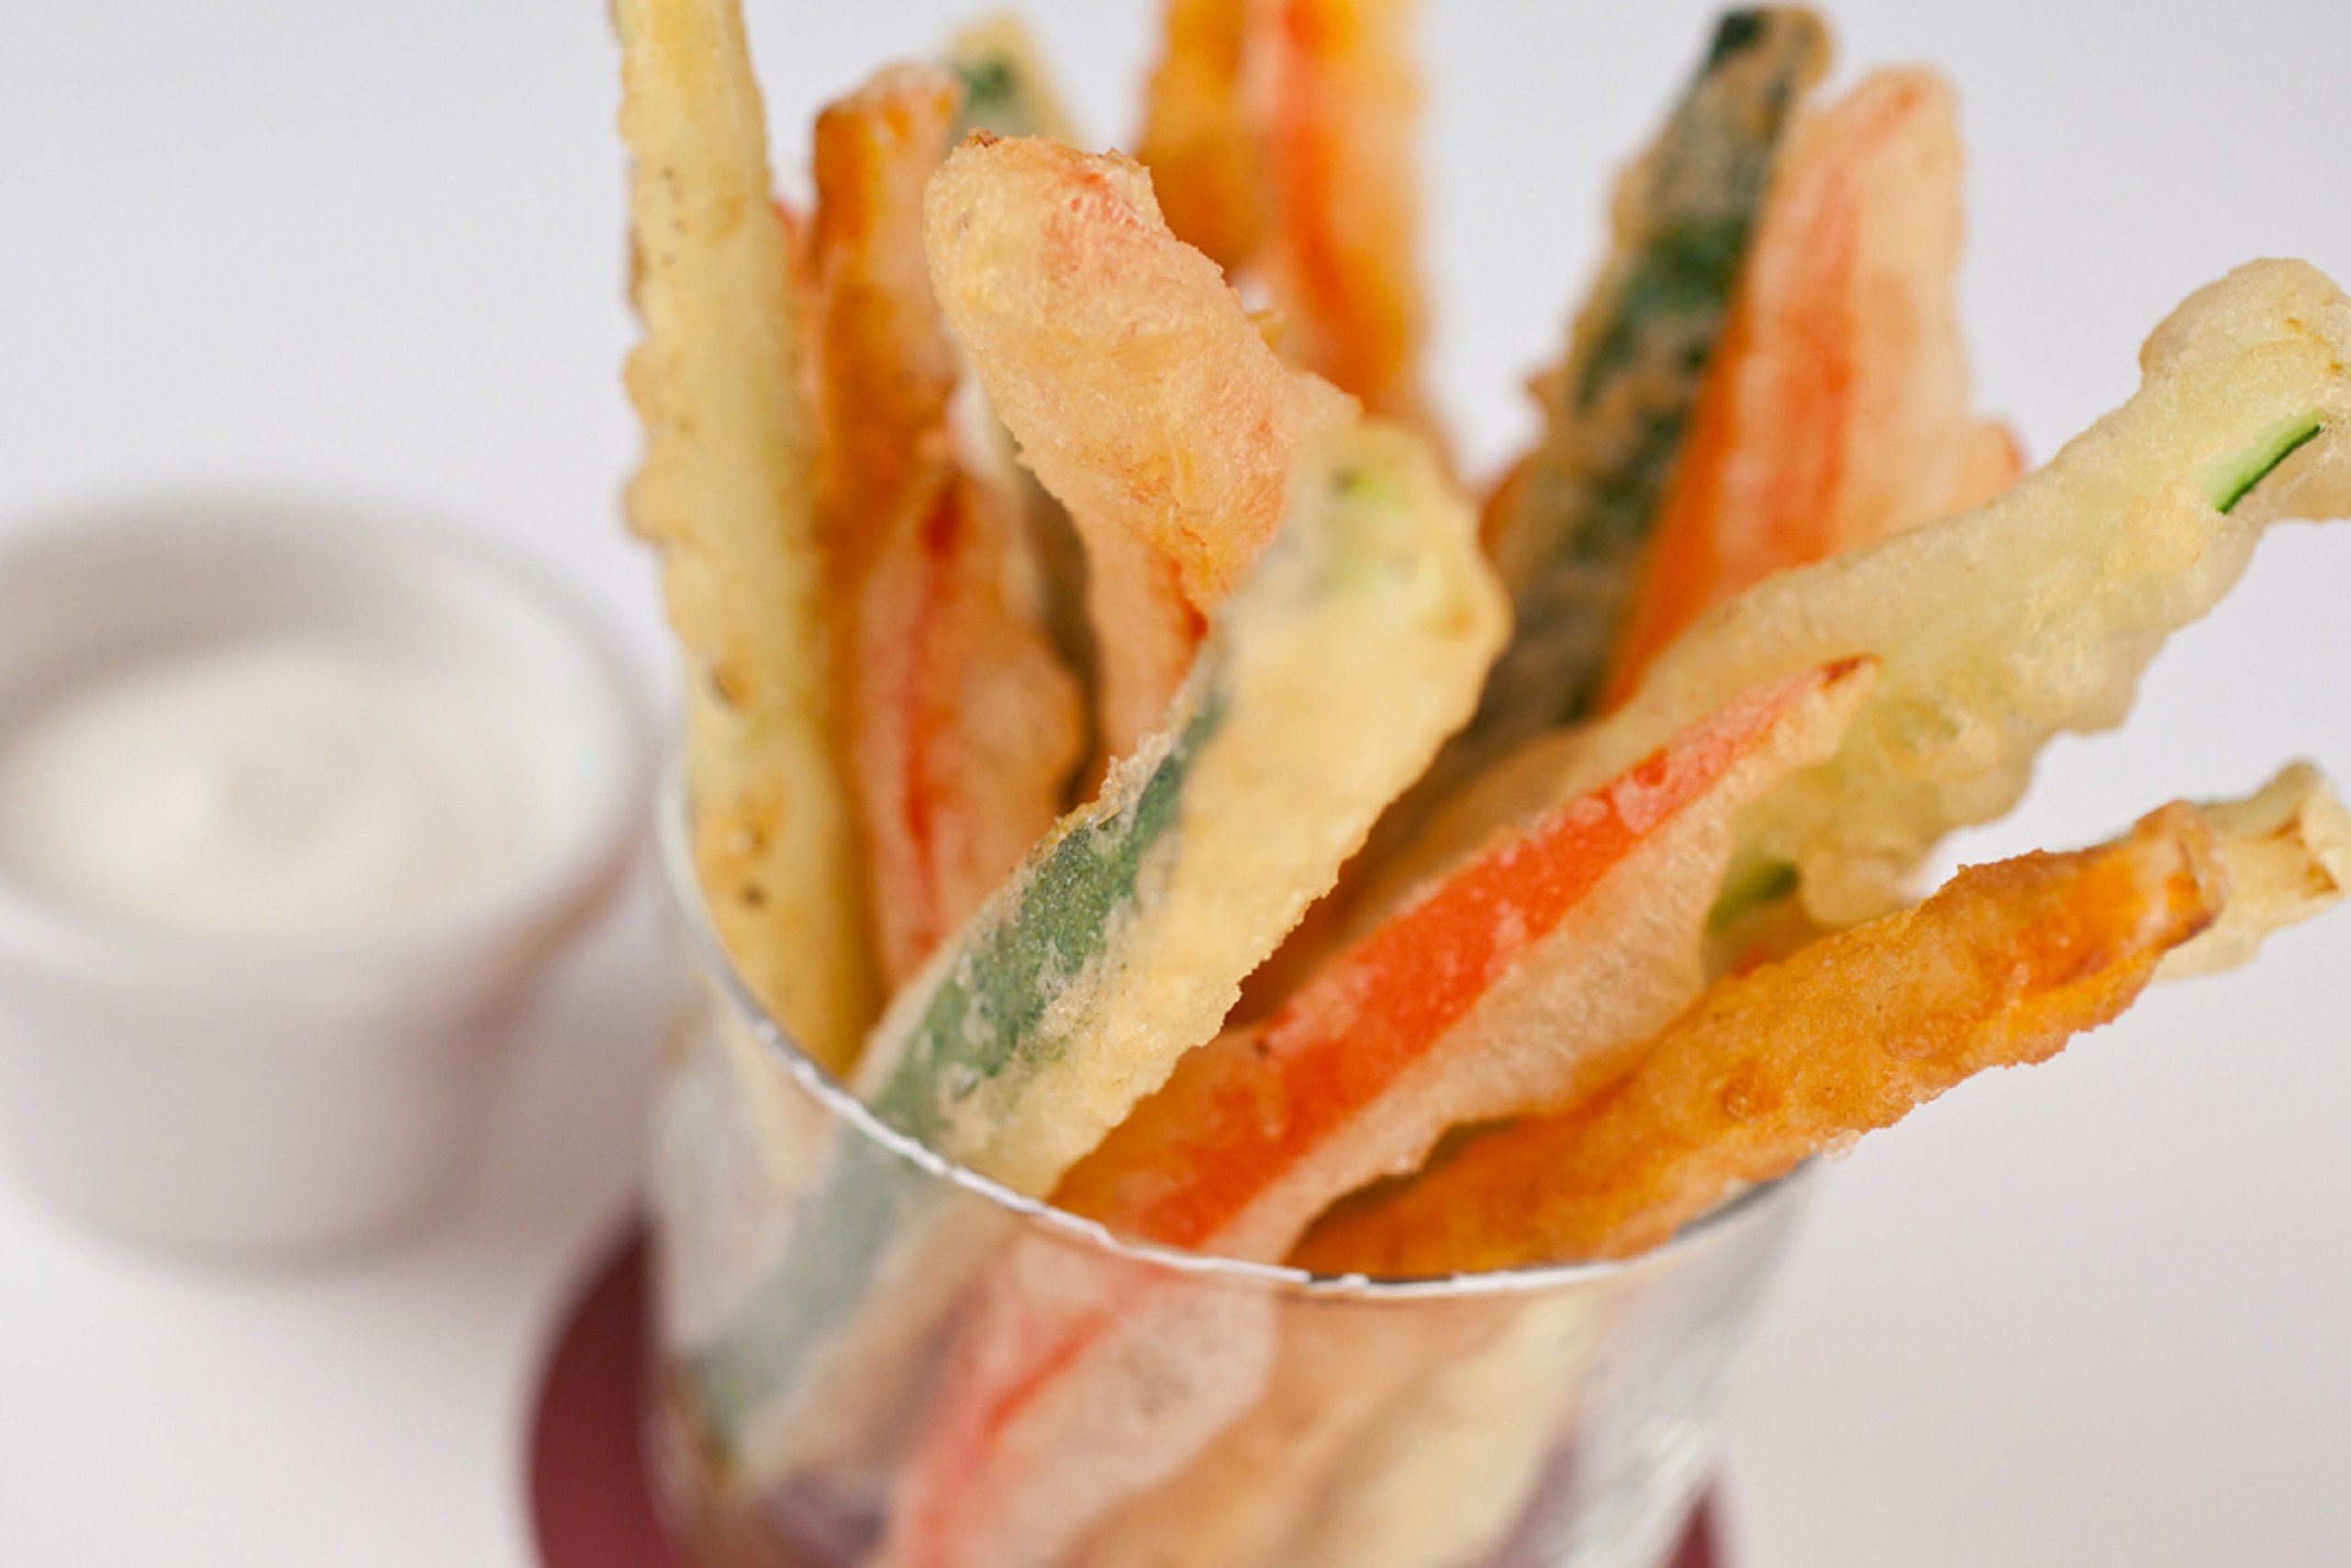 Llega la novedad congelada de Mercadona: tempura de verduras hecha en Barcelona